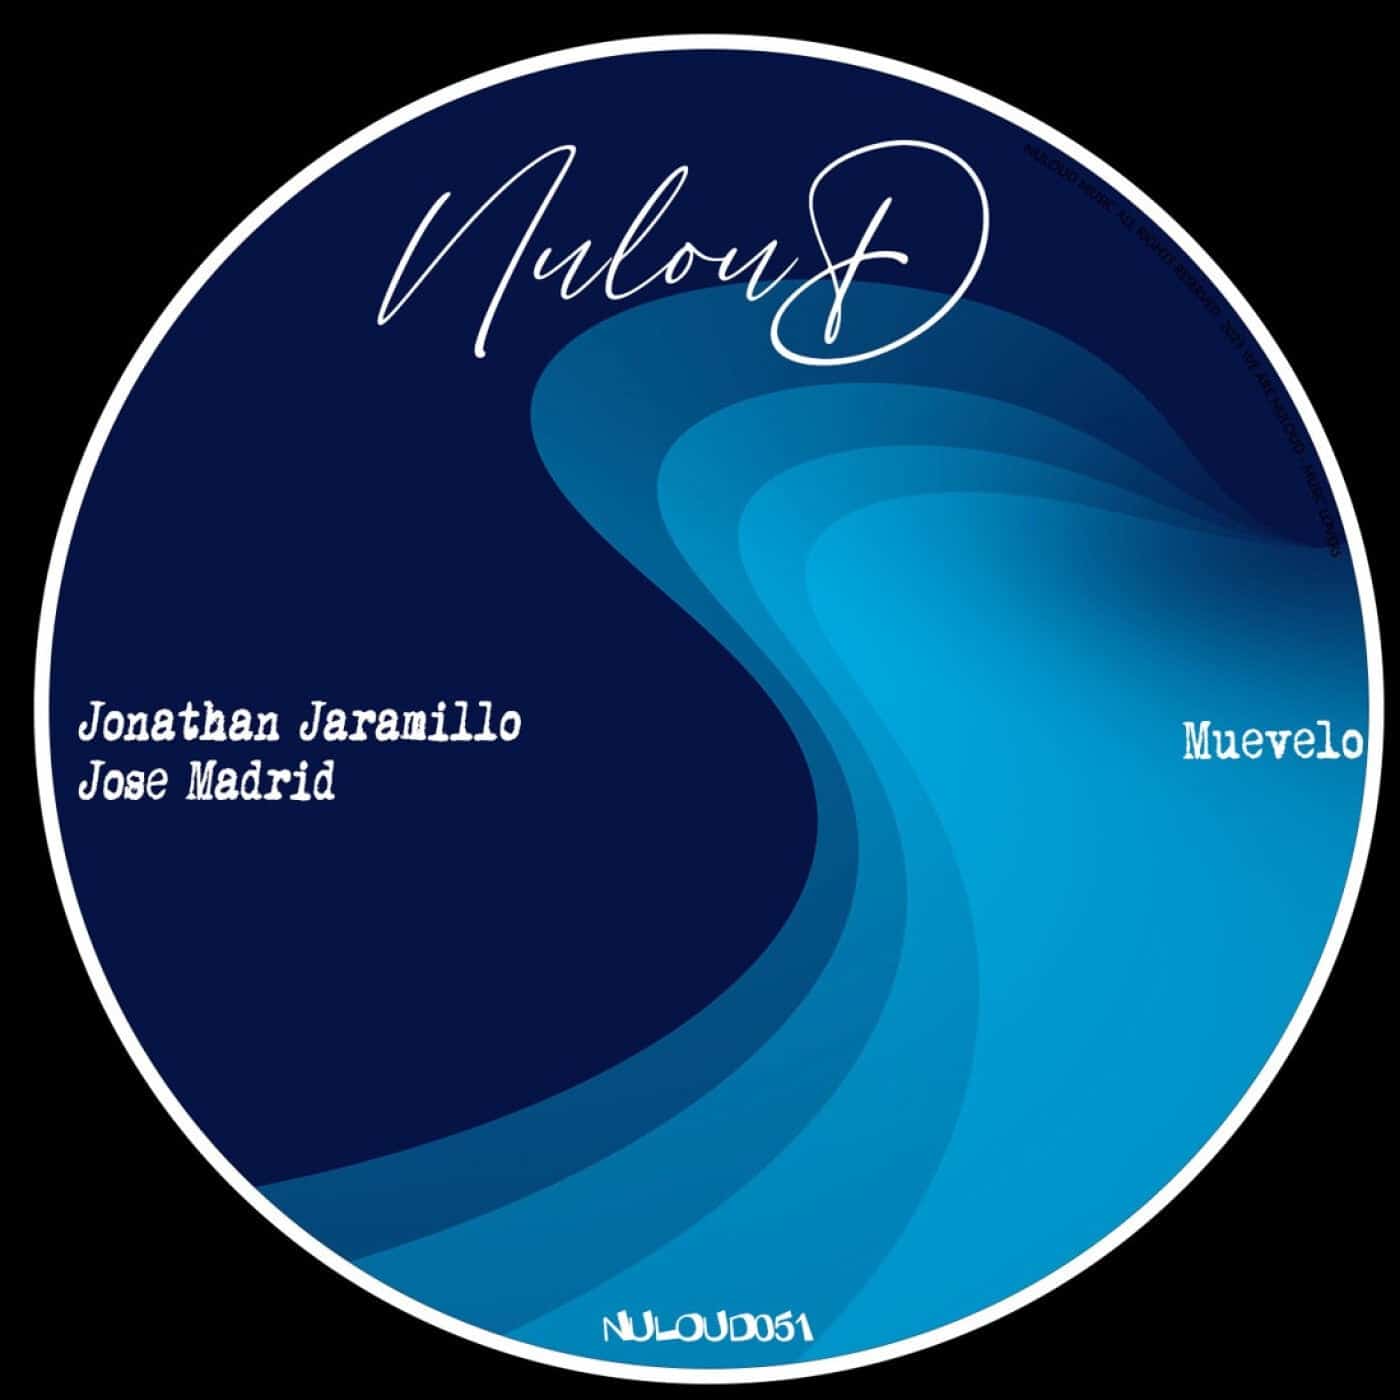 Download Jonathan Jaramillo, Jose Madrid - Muevelo on Electrobuzz